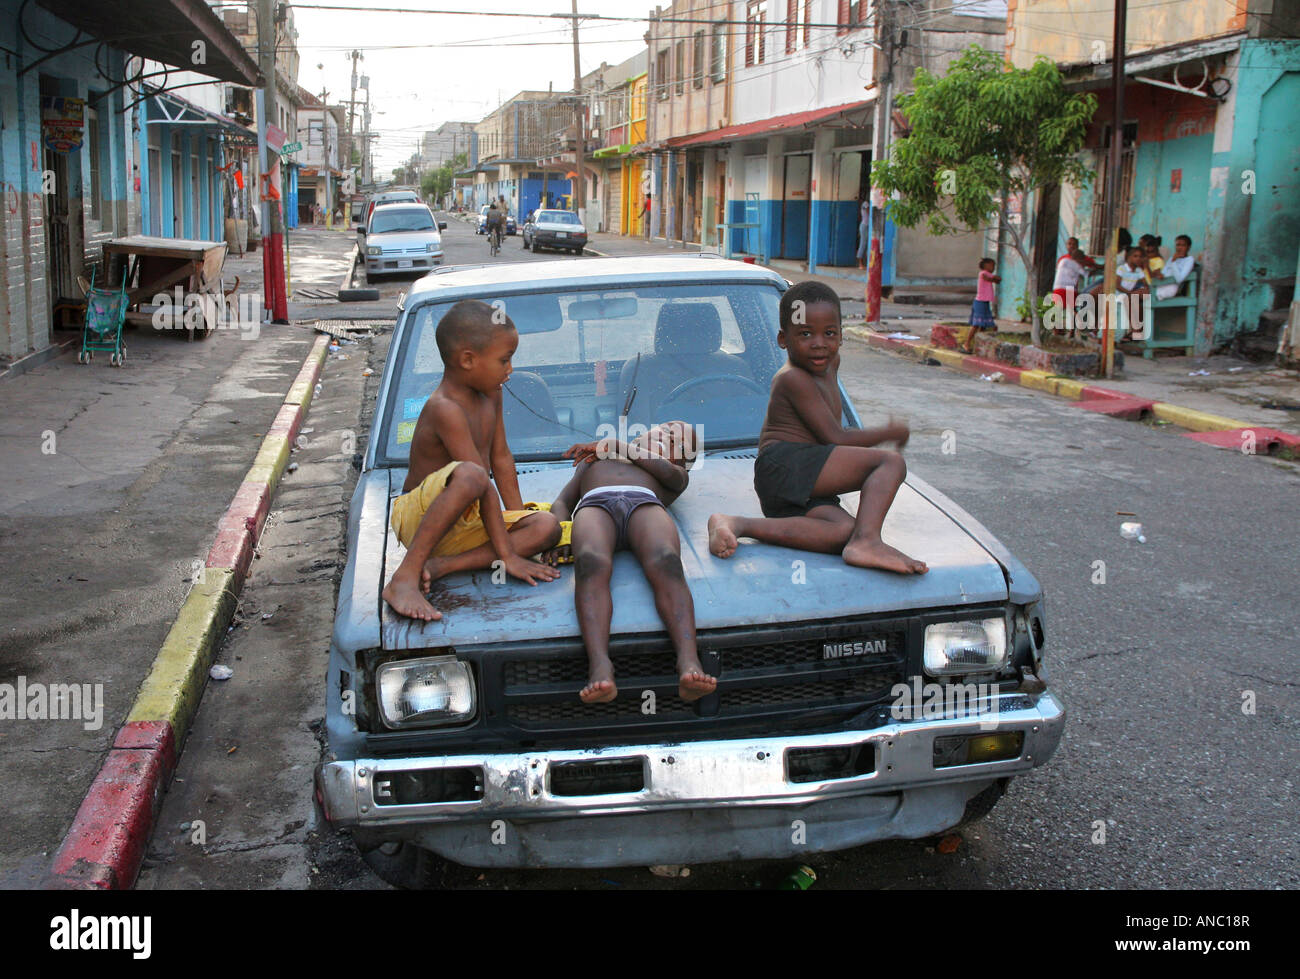 Kingston, Jamaika: Kinder spielen auf einem Wrack-Auto in der Innenstadt von Kingston Stockfoto